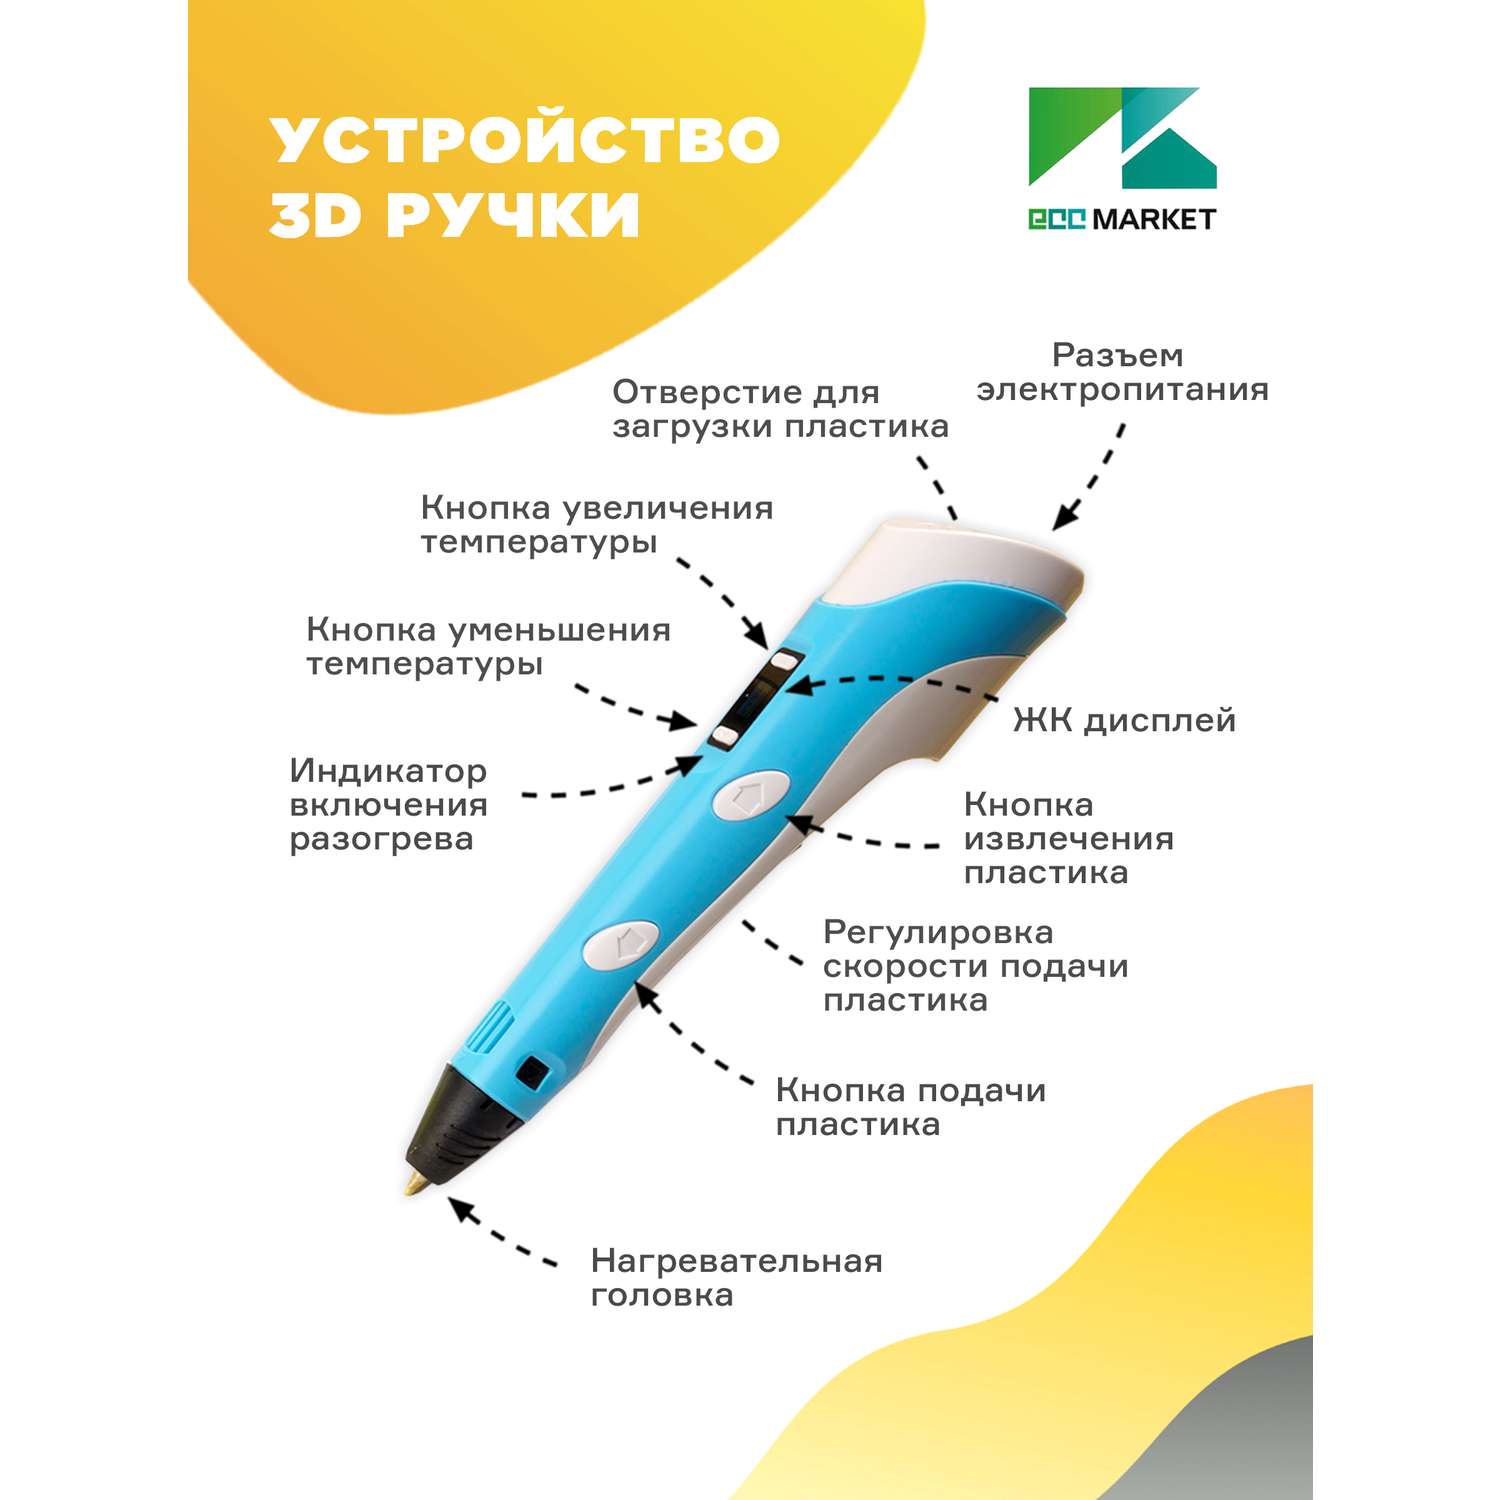 3D ручка ECC Market 3D Pen PRO 15 голубая - фото 3